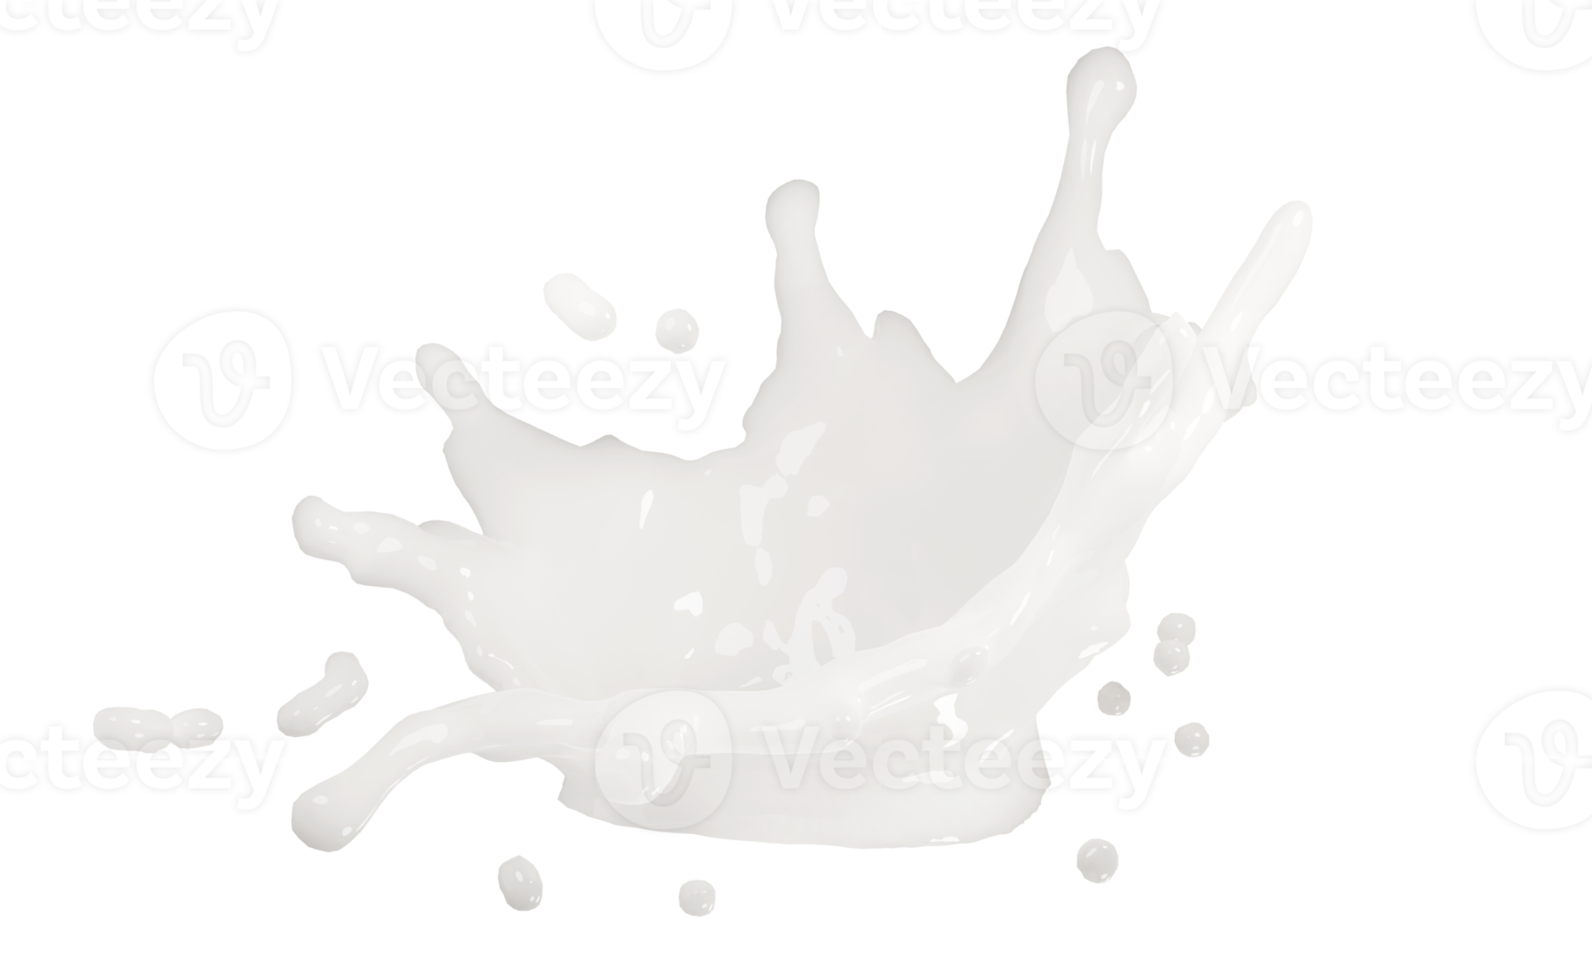 respingo de ondulação de leite ou iogurte 3D isolado. ilustração de renderização 3D png